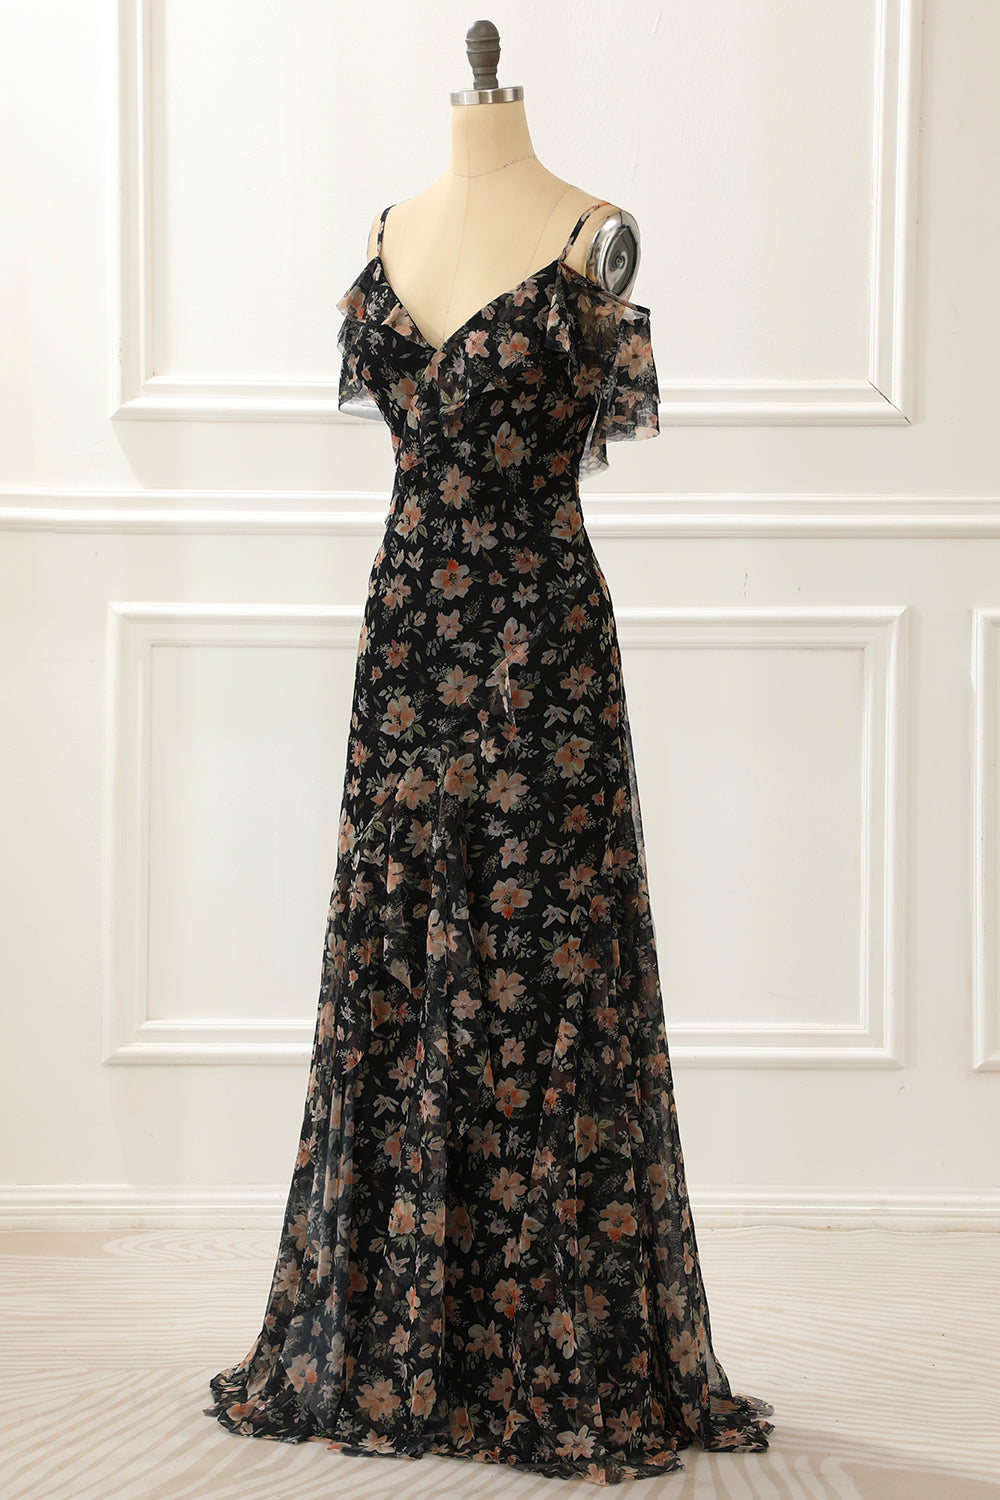 Formal Dress Vintage, Off The Shoulder Black A Line Prom Dress with Floral